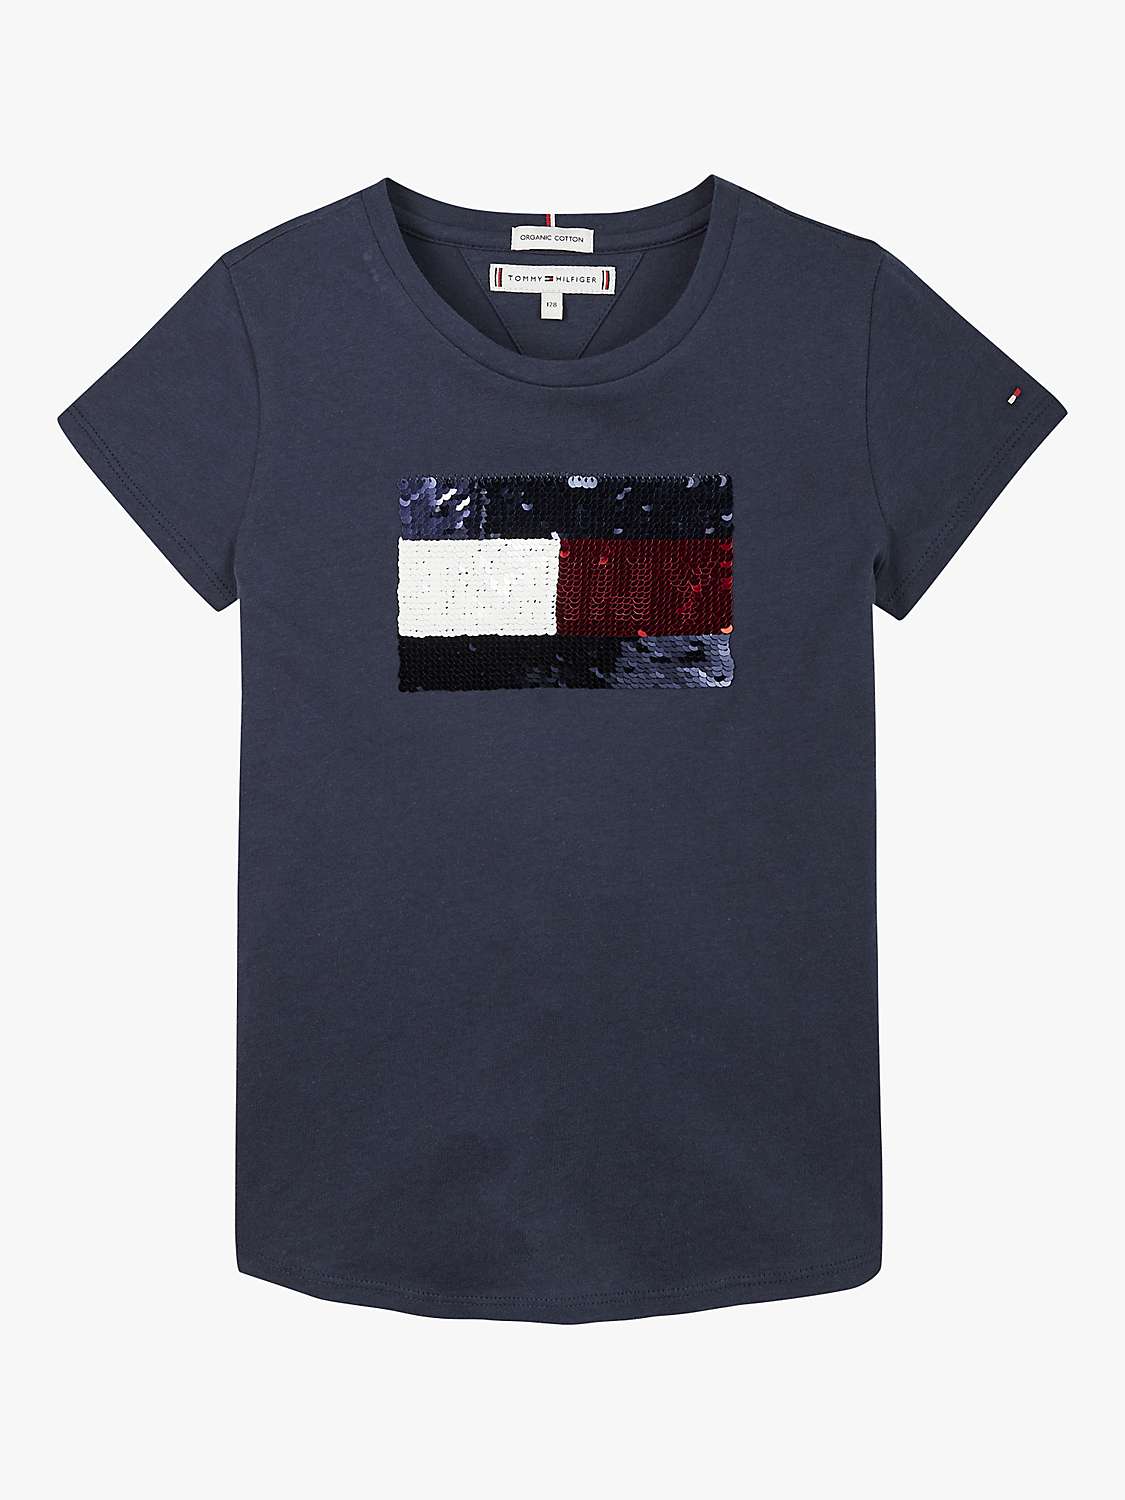 Buy Tommy Hilfiger Kids' Sequin Flag T-Shirt, Twilight Navy Online at johnlewis.com